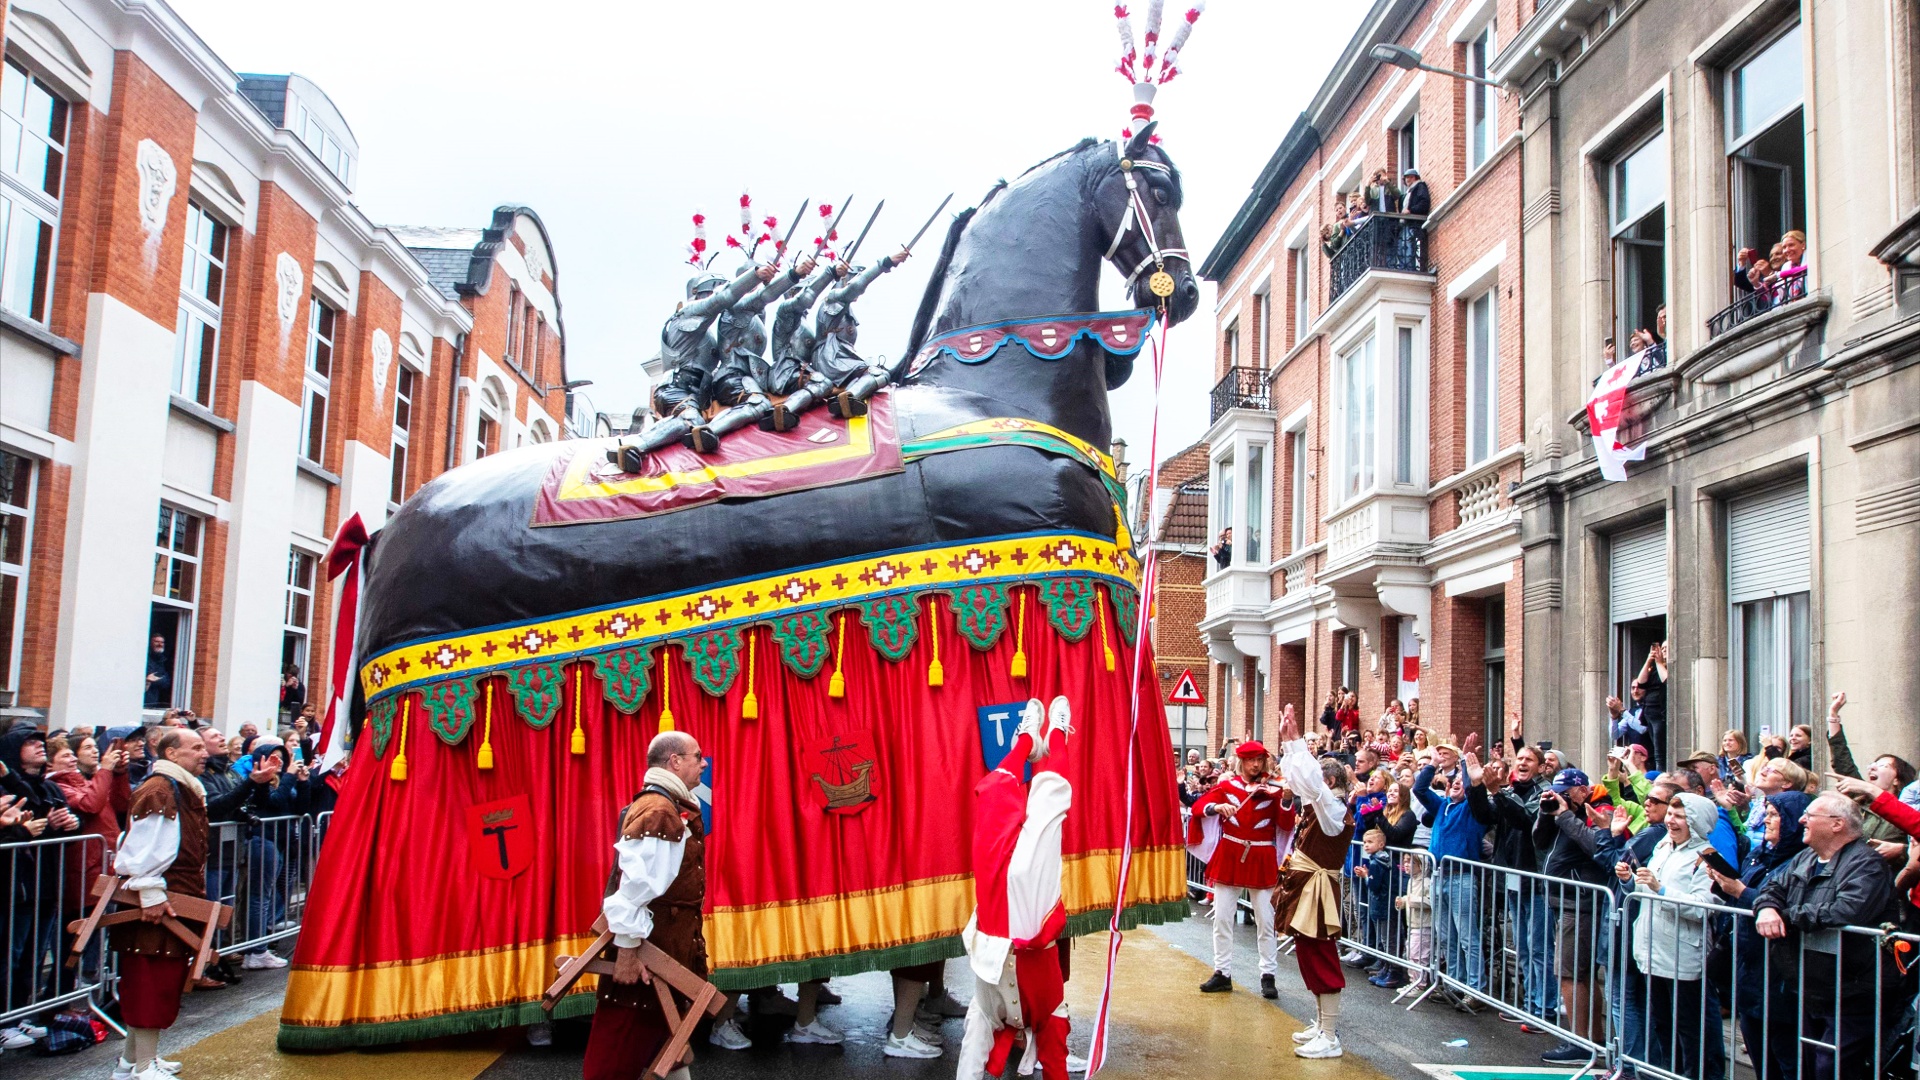 Конь-великан «прогарцевал» по улицам бельгийского городка